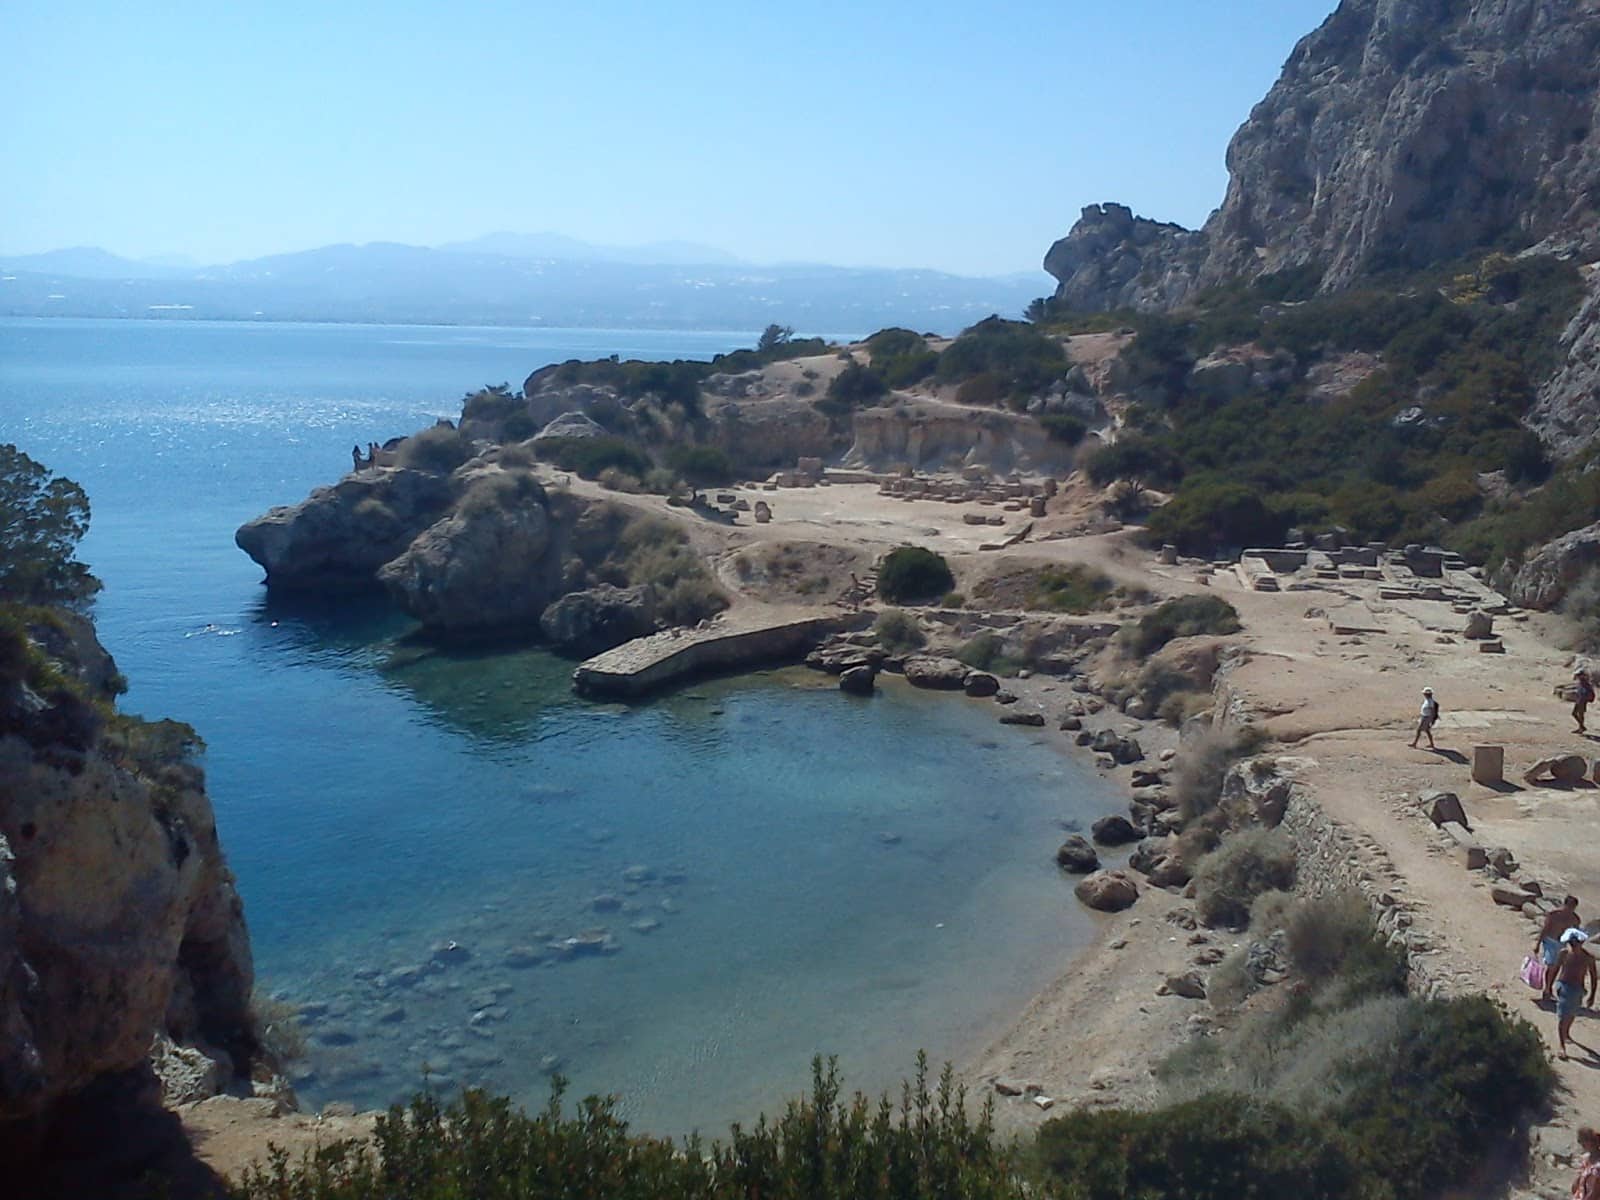 Η μοναδική παραλία στην Πελοπόννησο μέσα στον αρχαιολογικό χώρο!